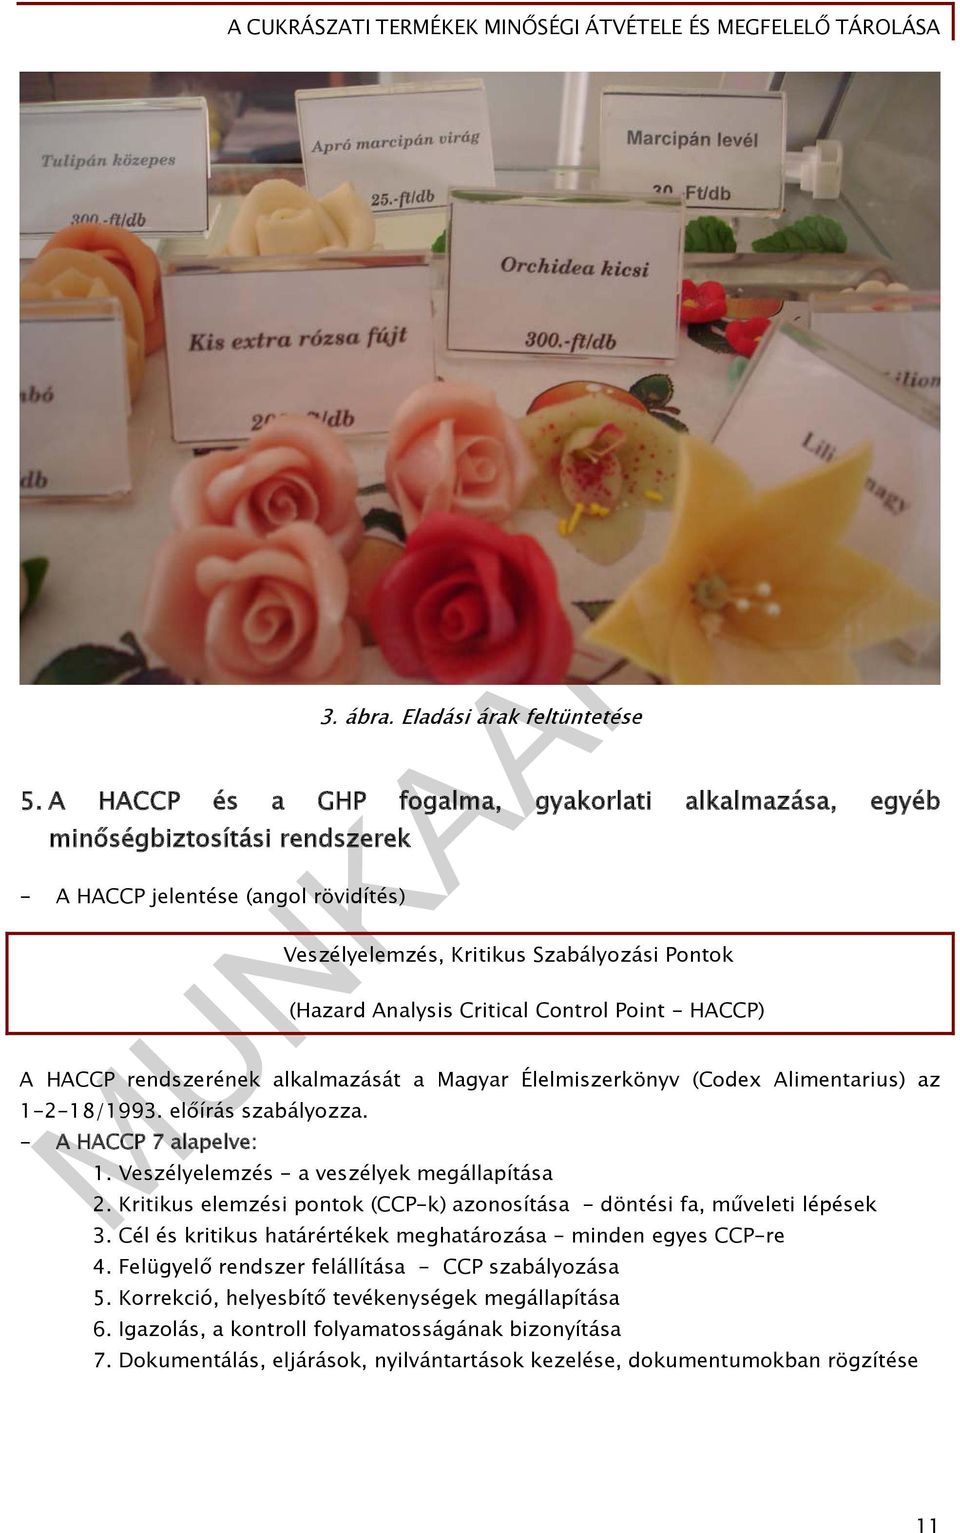 Control Point - HACCP) A HACCP rendszerének alkalmazását a Magyar Élelmiszerkönyv (Codex Alimentarius) az 1-2-18/1993. előírás szabályozza. - A HACCP 7 alapelve: 1.